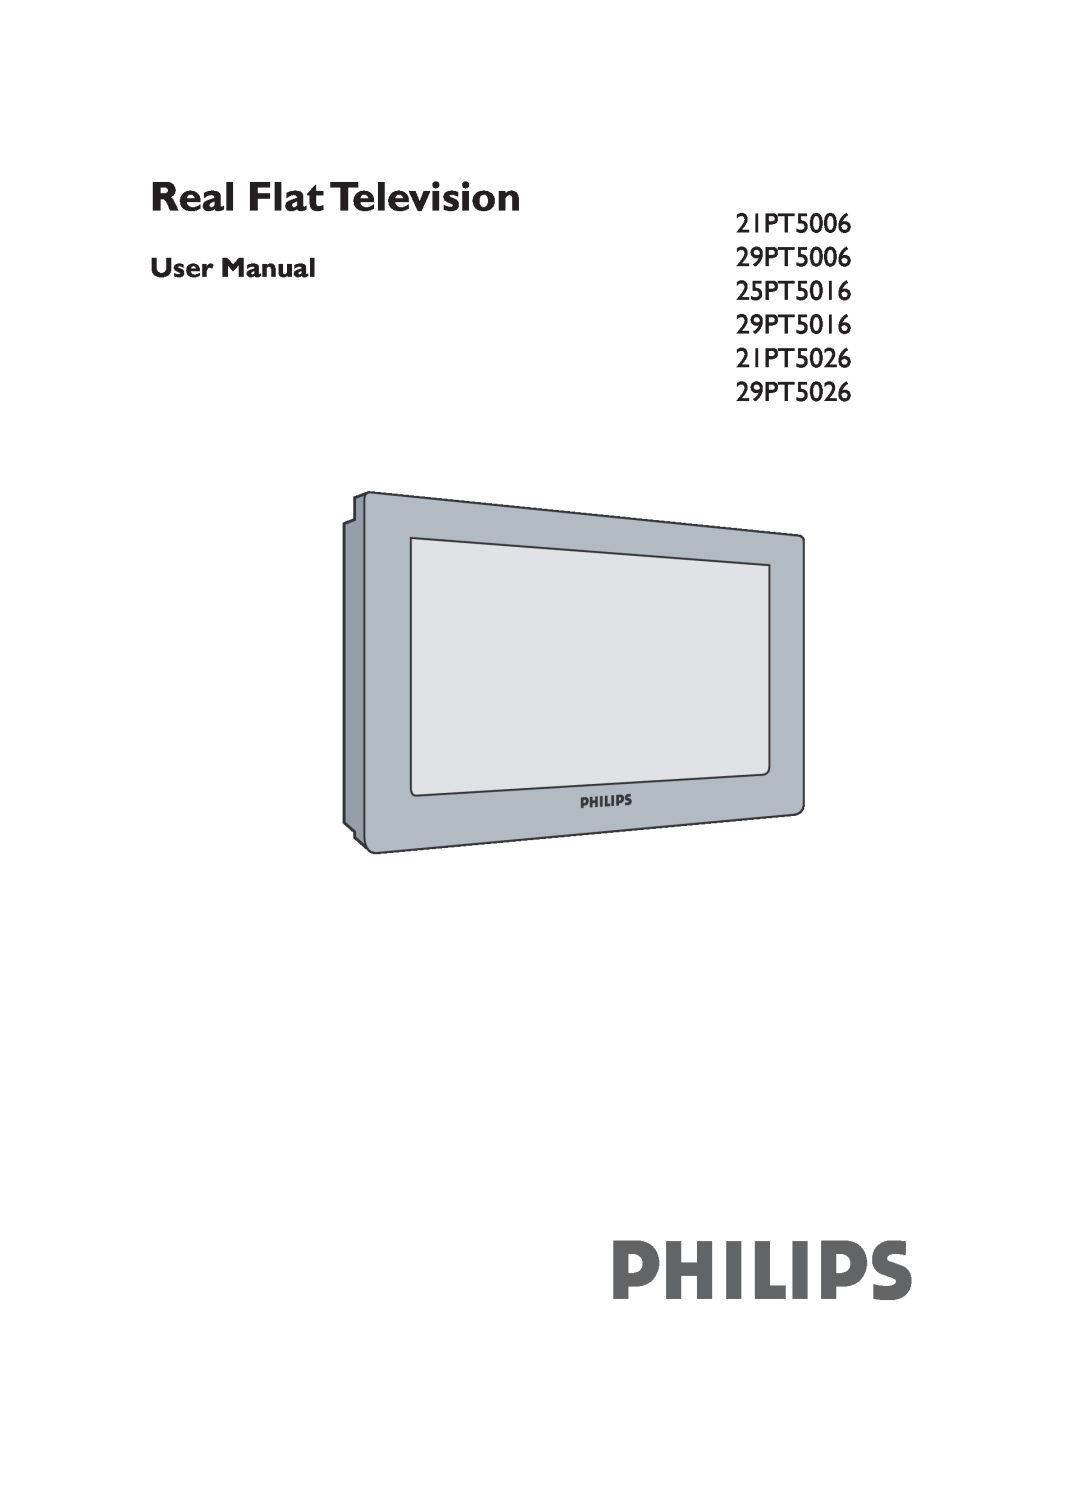 Philips 29PT5016 user manual Real Flat Television, 21PT5006, 29PT5006, 25PT5016, 21PT5026, 29PT5026 